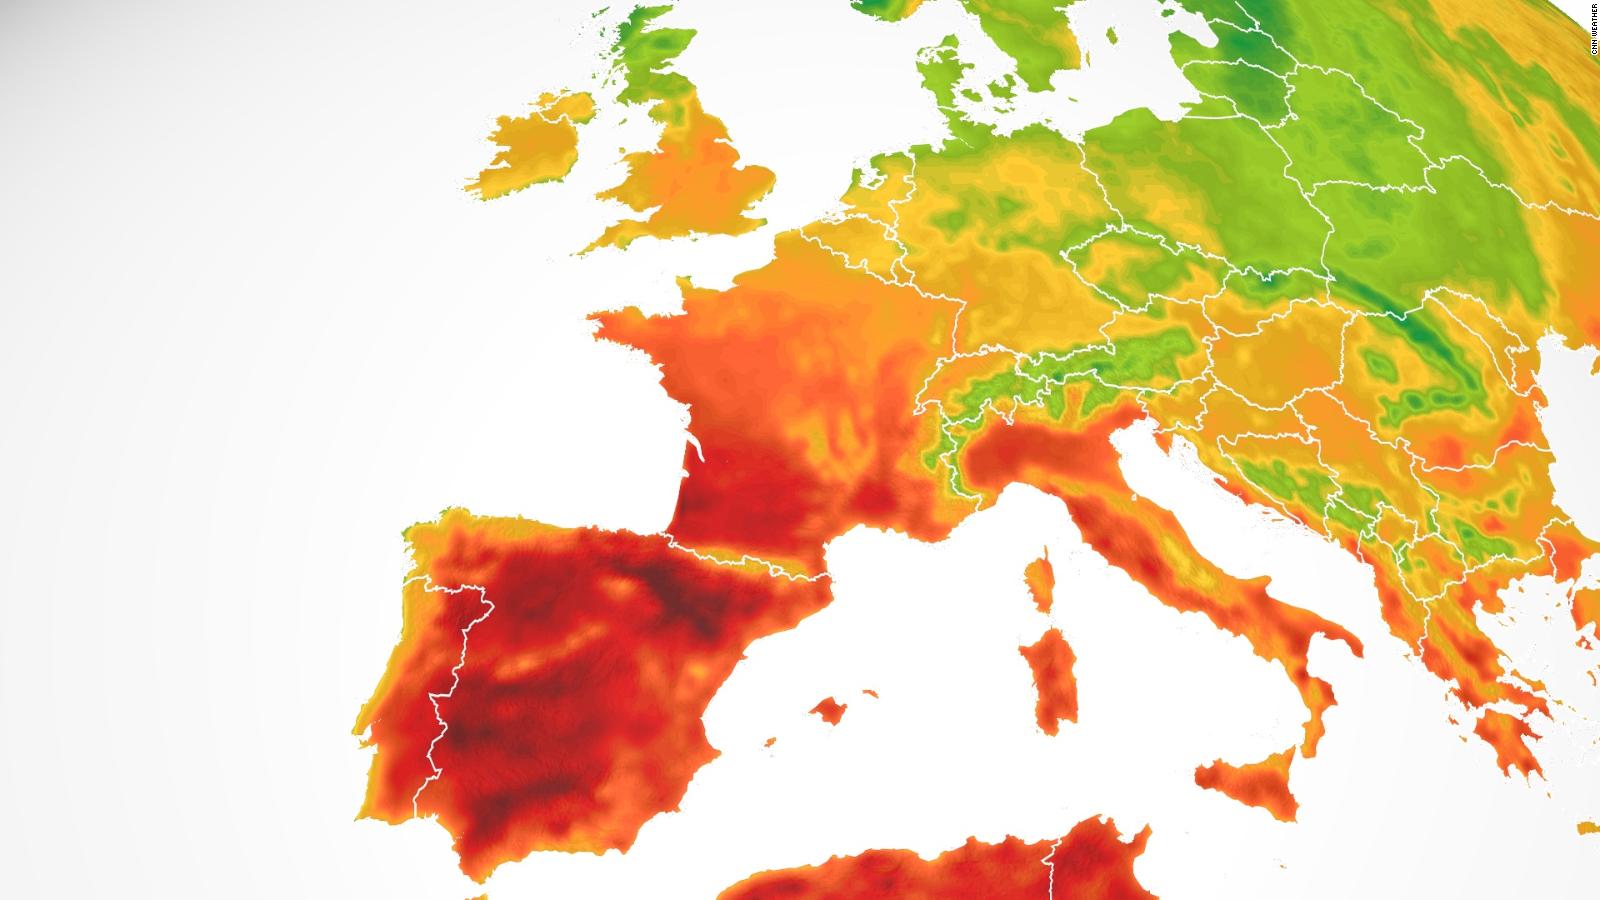 L’Europa occidentale affronta una pericolosa ondata di caldo